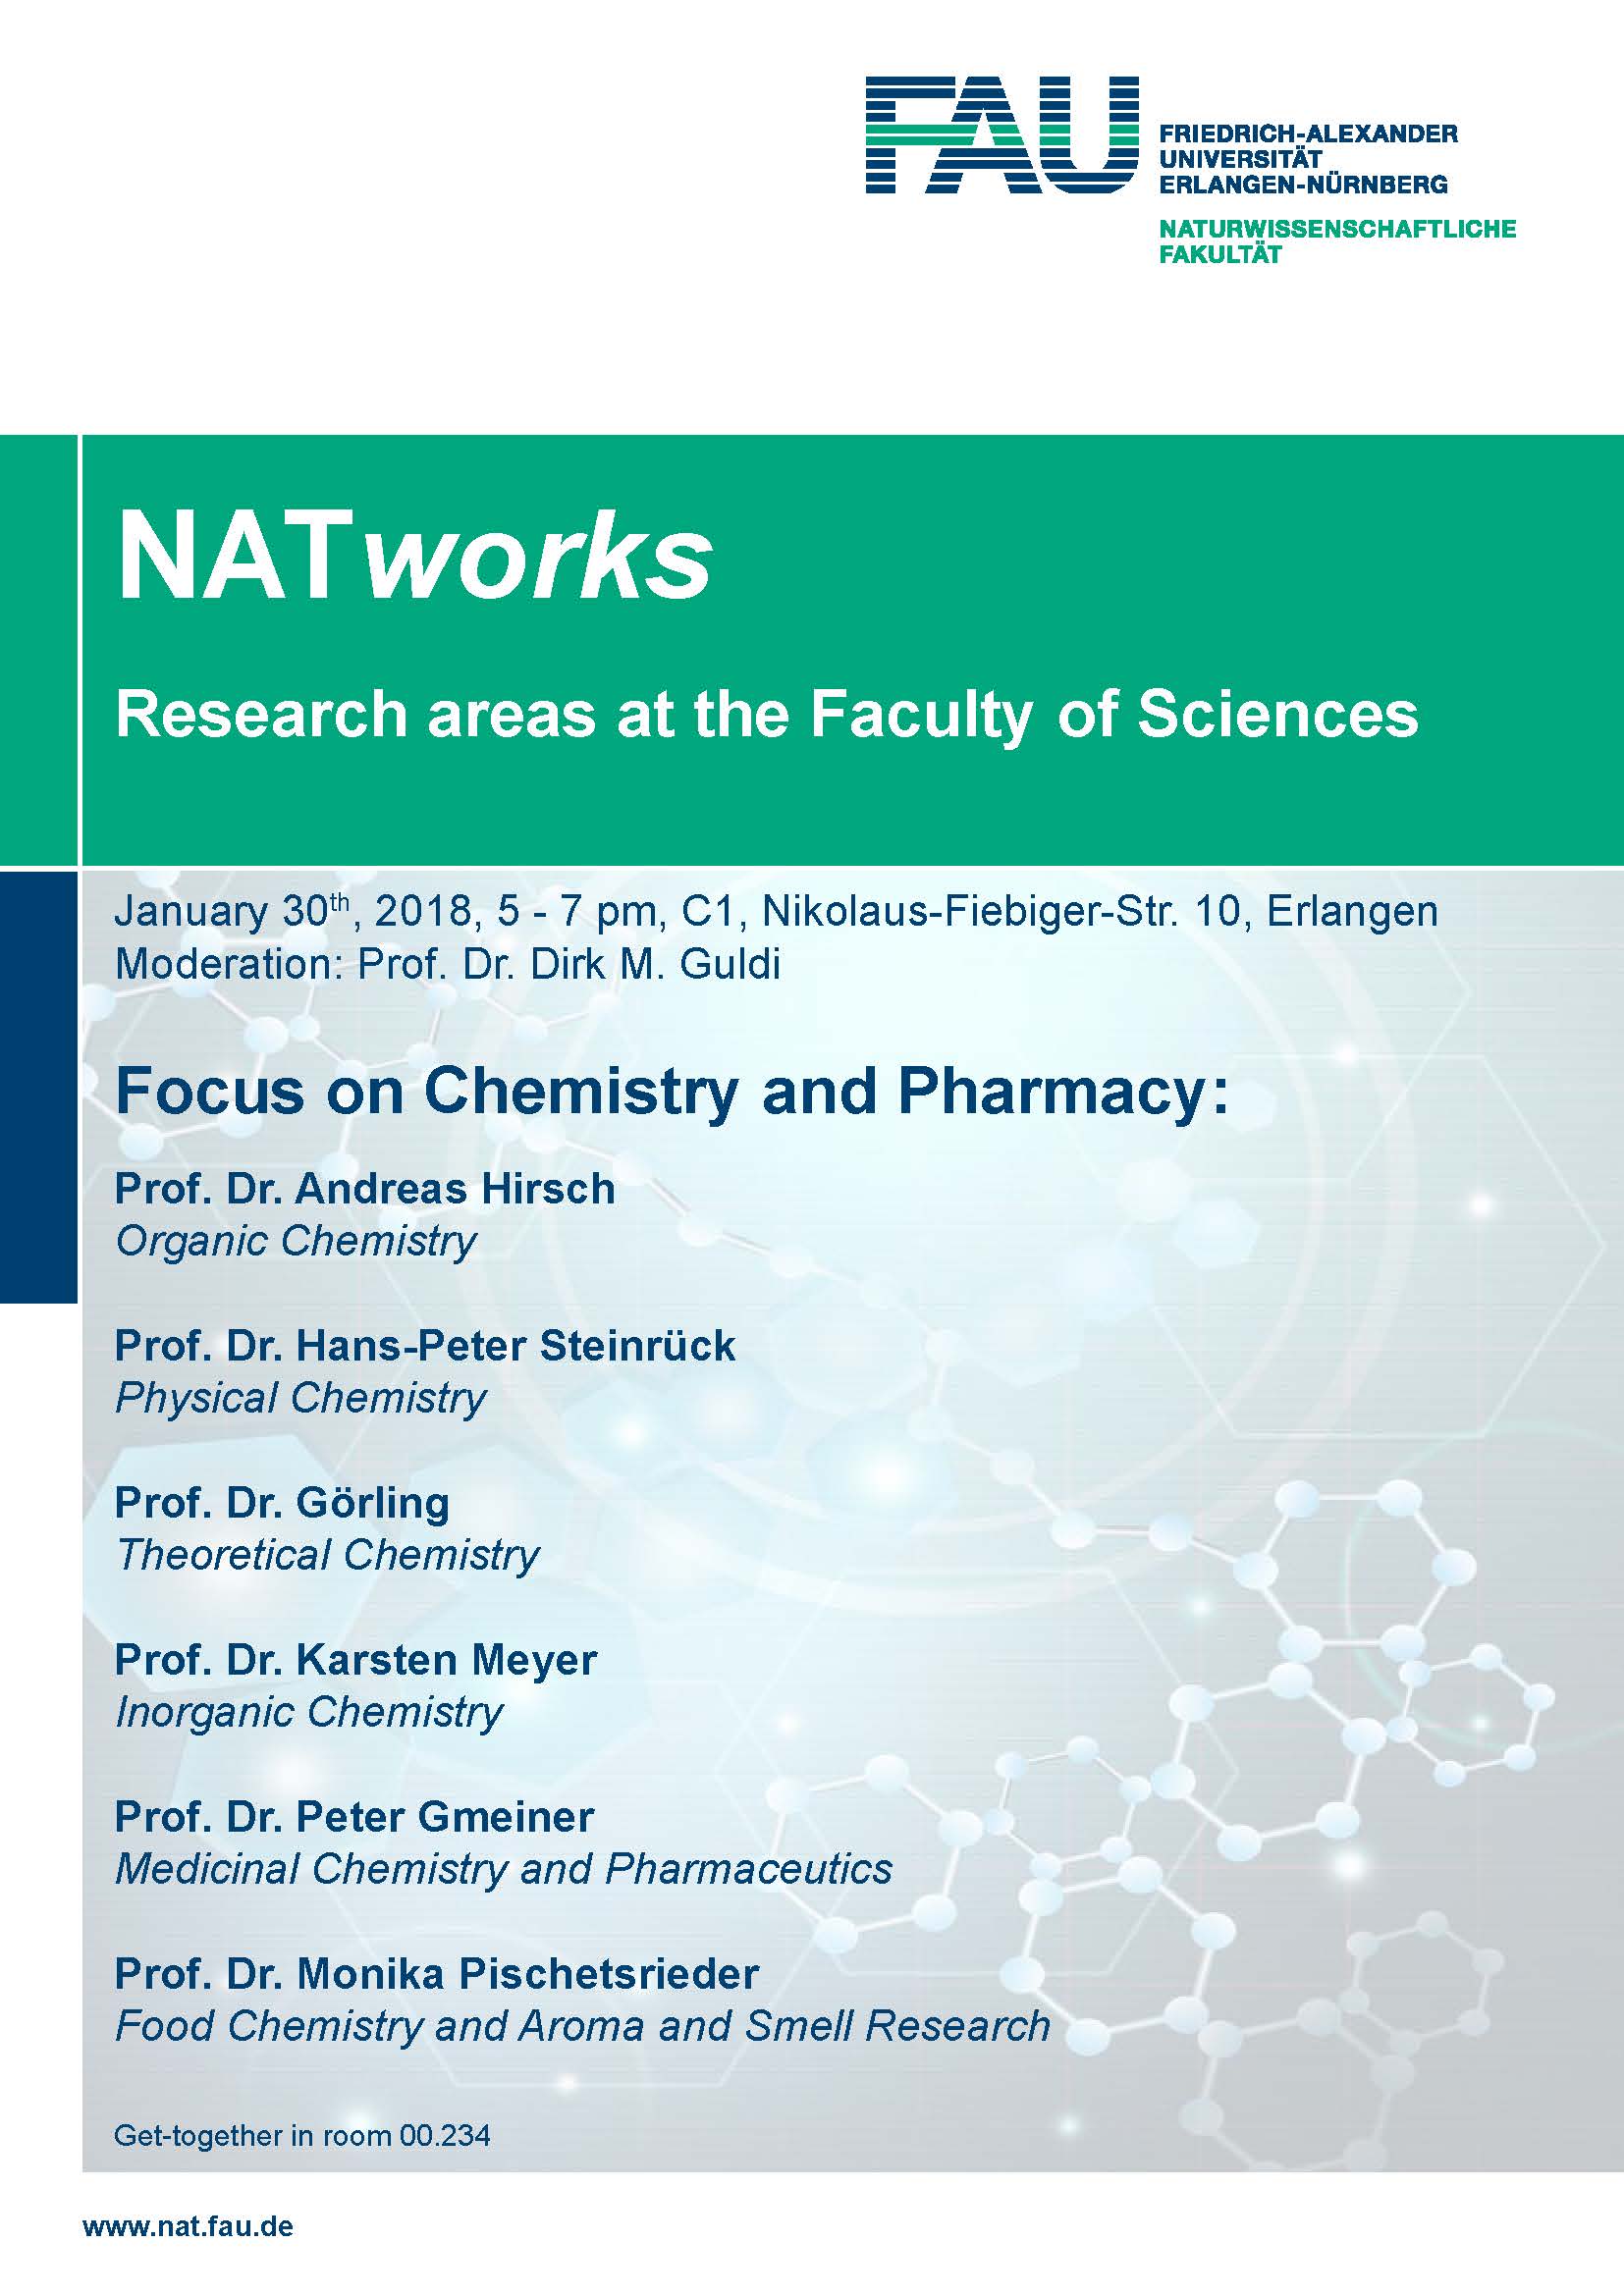 Zum Artikel "NATworks – Veranstaltungsreihe der Naturwissenschaftlichen Fakultät"